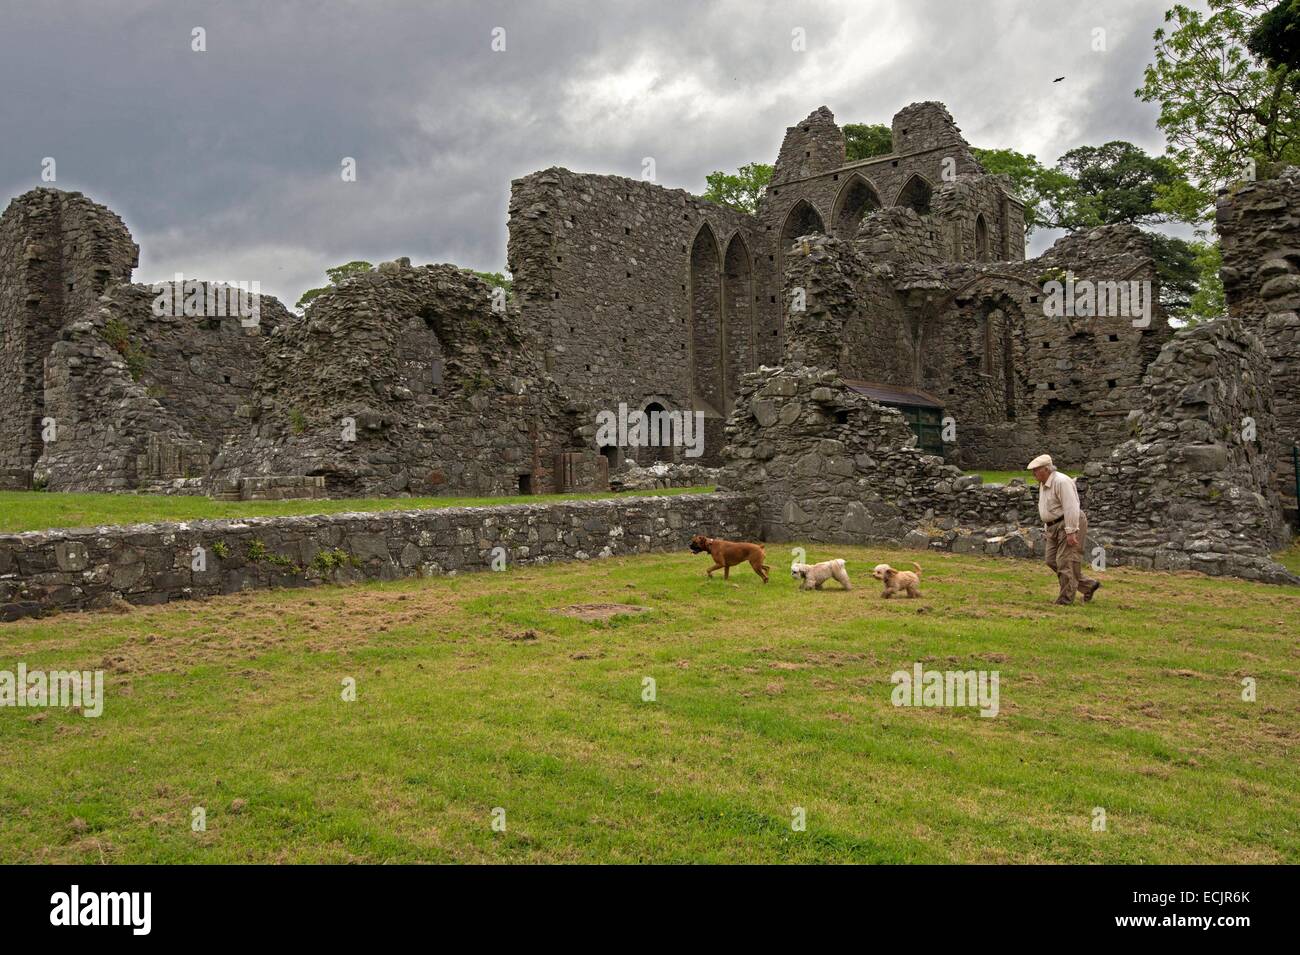 Regno Unito e Irlanda del Nord, County Down, le rovine monastiche a Inch Abbey sono state stampate in i gemelli e il Riverlands, l'hoster Tully funerale è stato impostato qui, ed è inoltre il luogo dove il Segugio e Arya partirono verso la Forcella rossa Foto Stock